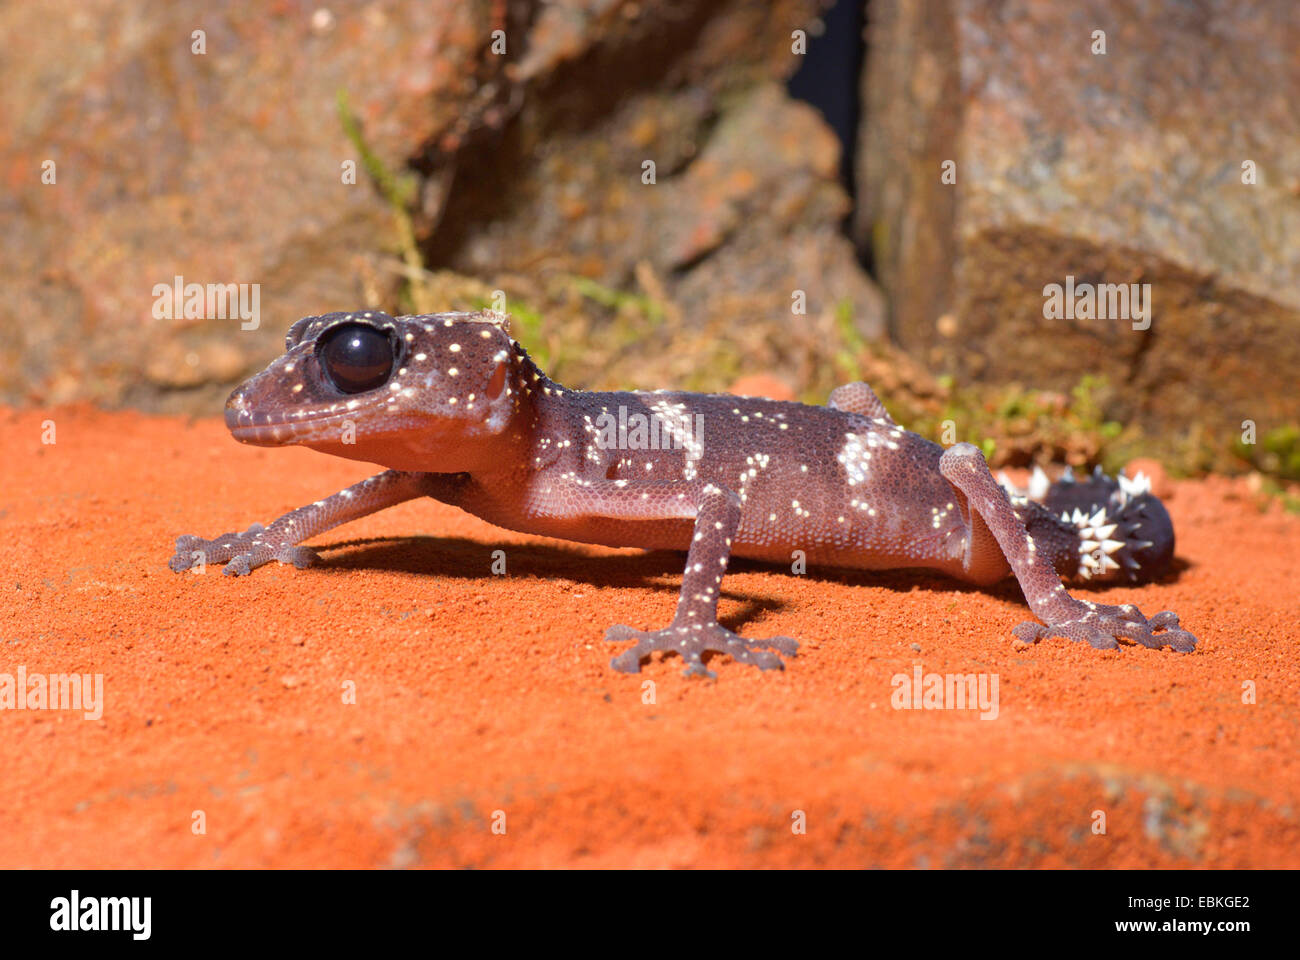 Madagascar Big Eyed Gecko (Paroedura masobe), on sand Stock Photo